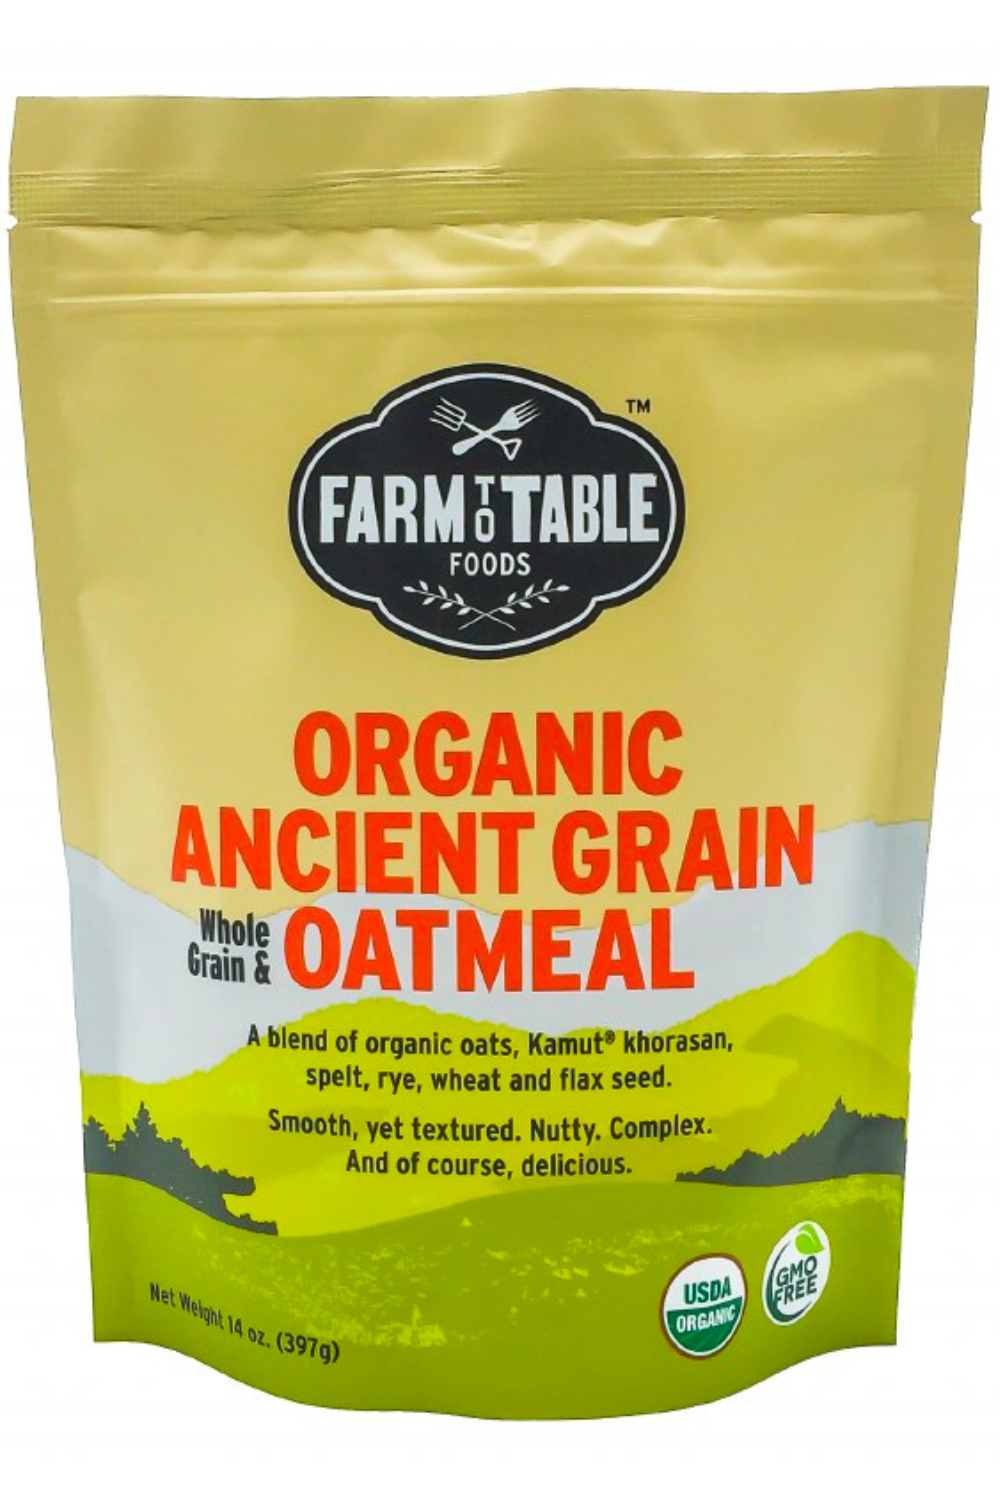 Farm To Table- Organic Oatmeal- "Ancient Grain", Ancient Grain, 14 oz bag